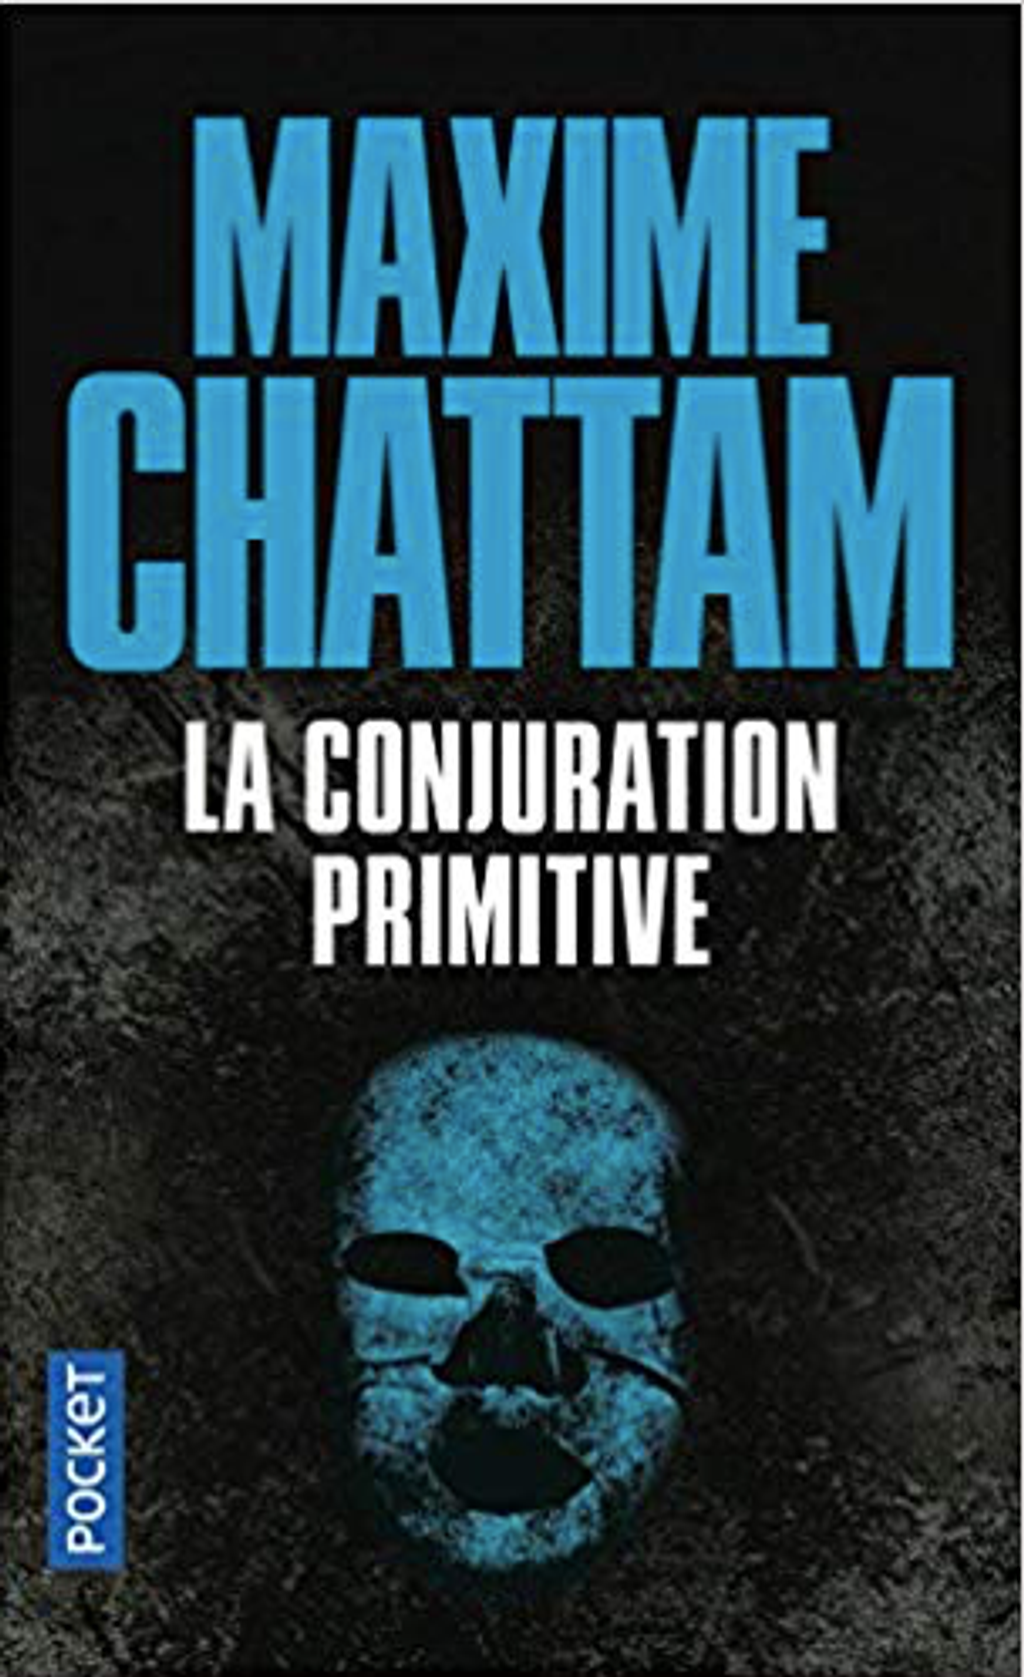 La conjuration primitive - Maxime Chattam - M -17.png